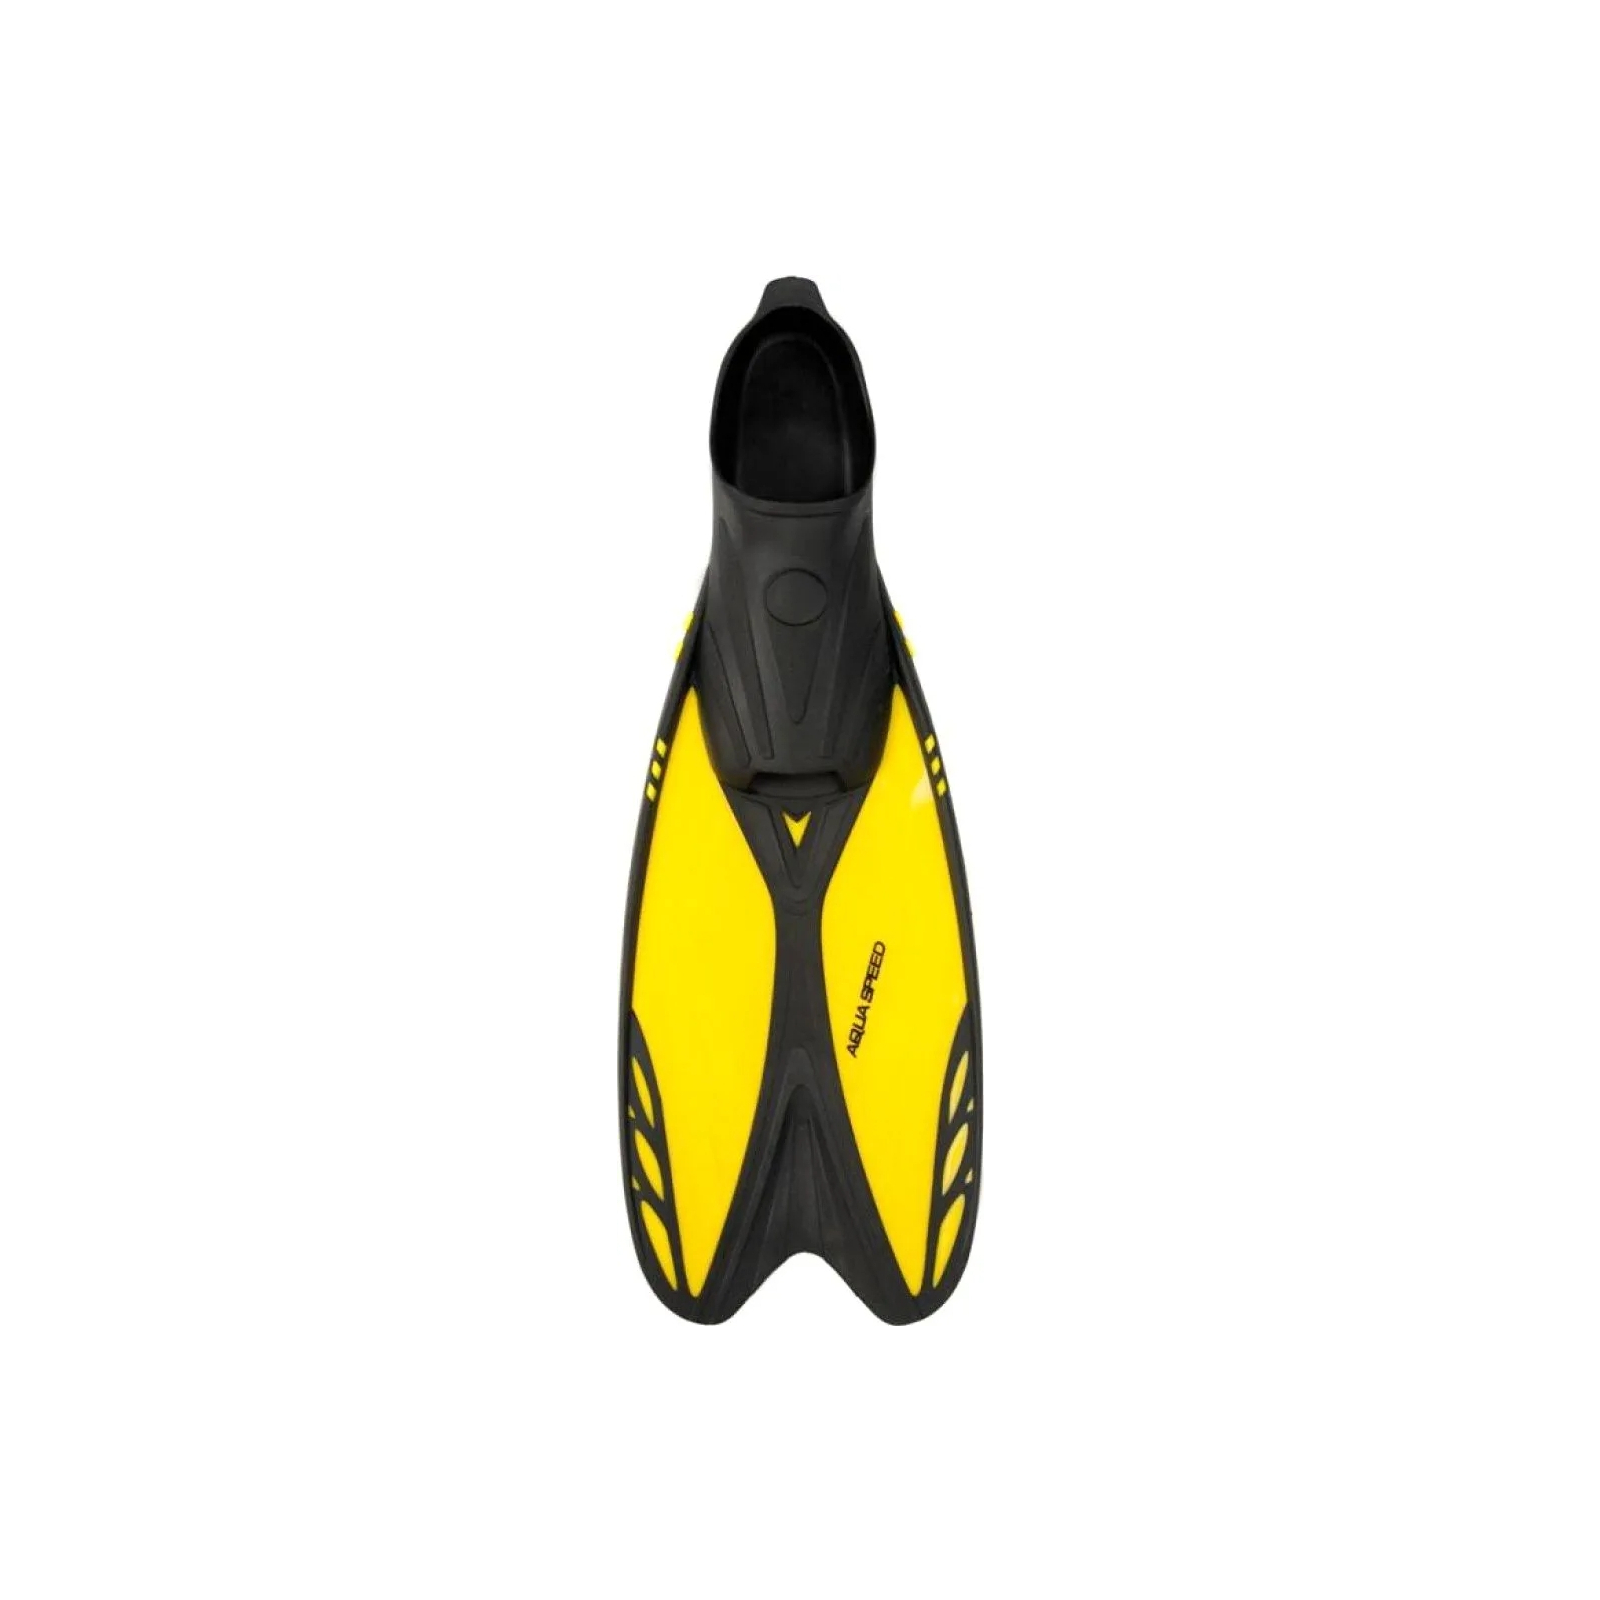 Ласты Aqua Speed Vapor 724-38 60271 жовтий, чорний 38-39 (5905718602711) изображение 2